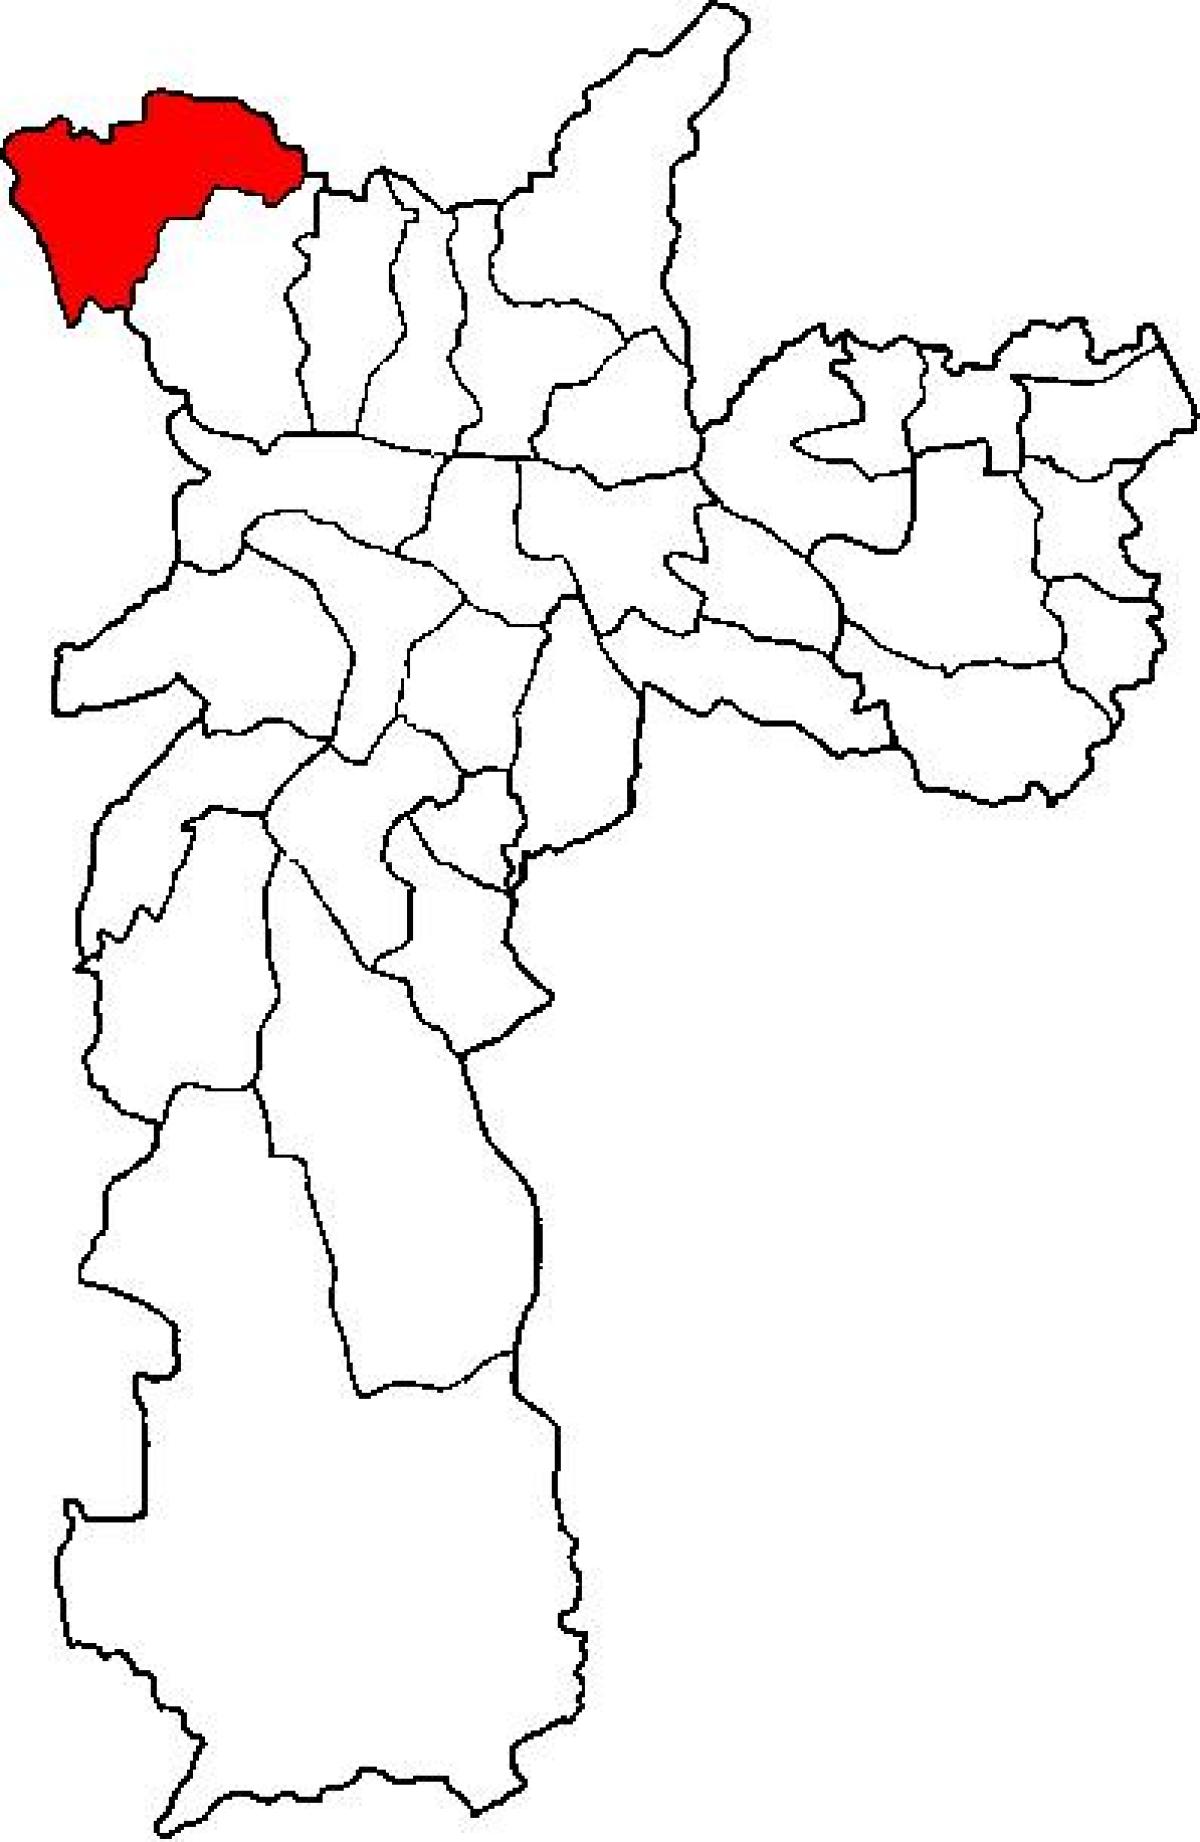 რუკა Perus sub-prefecture São Paulo